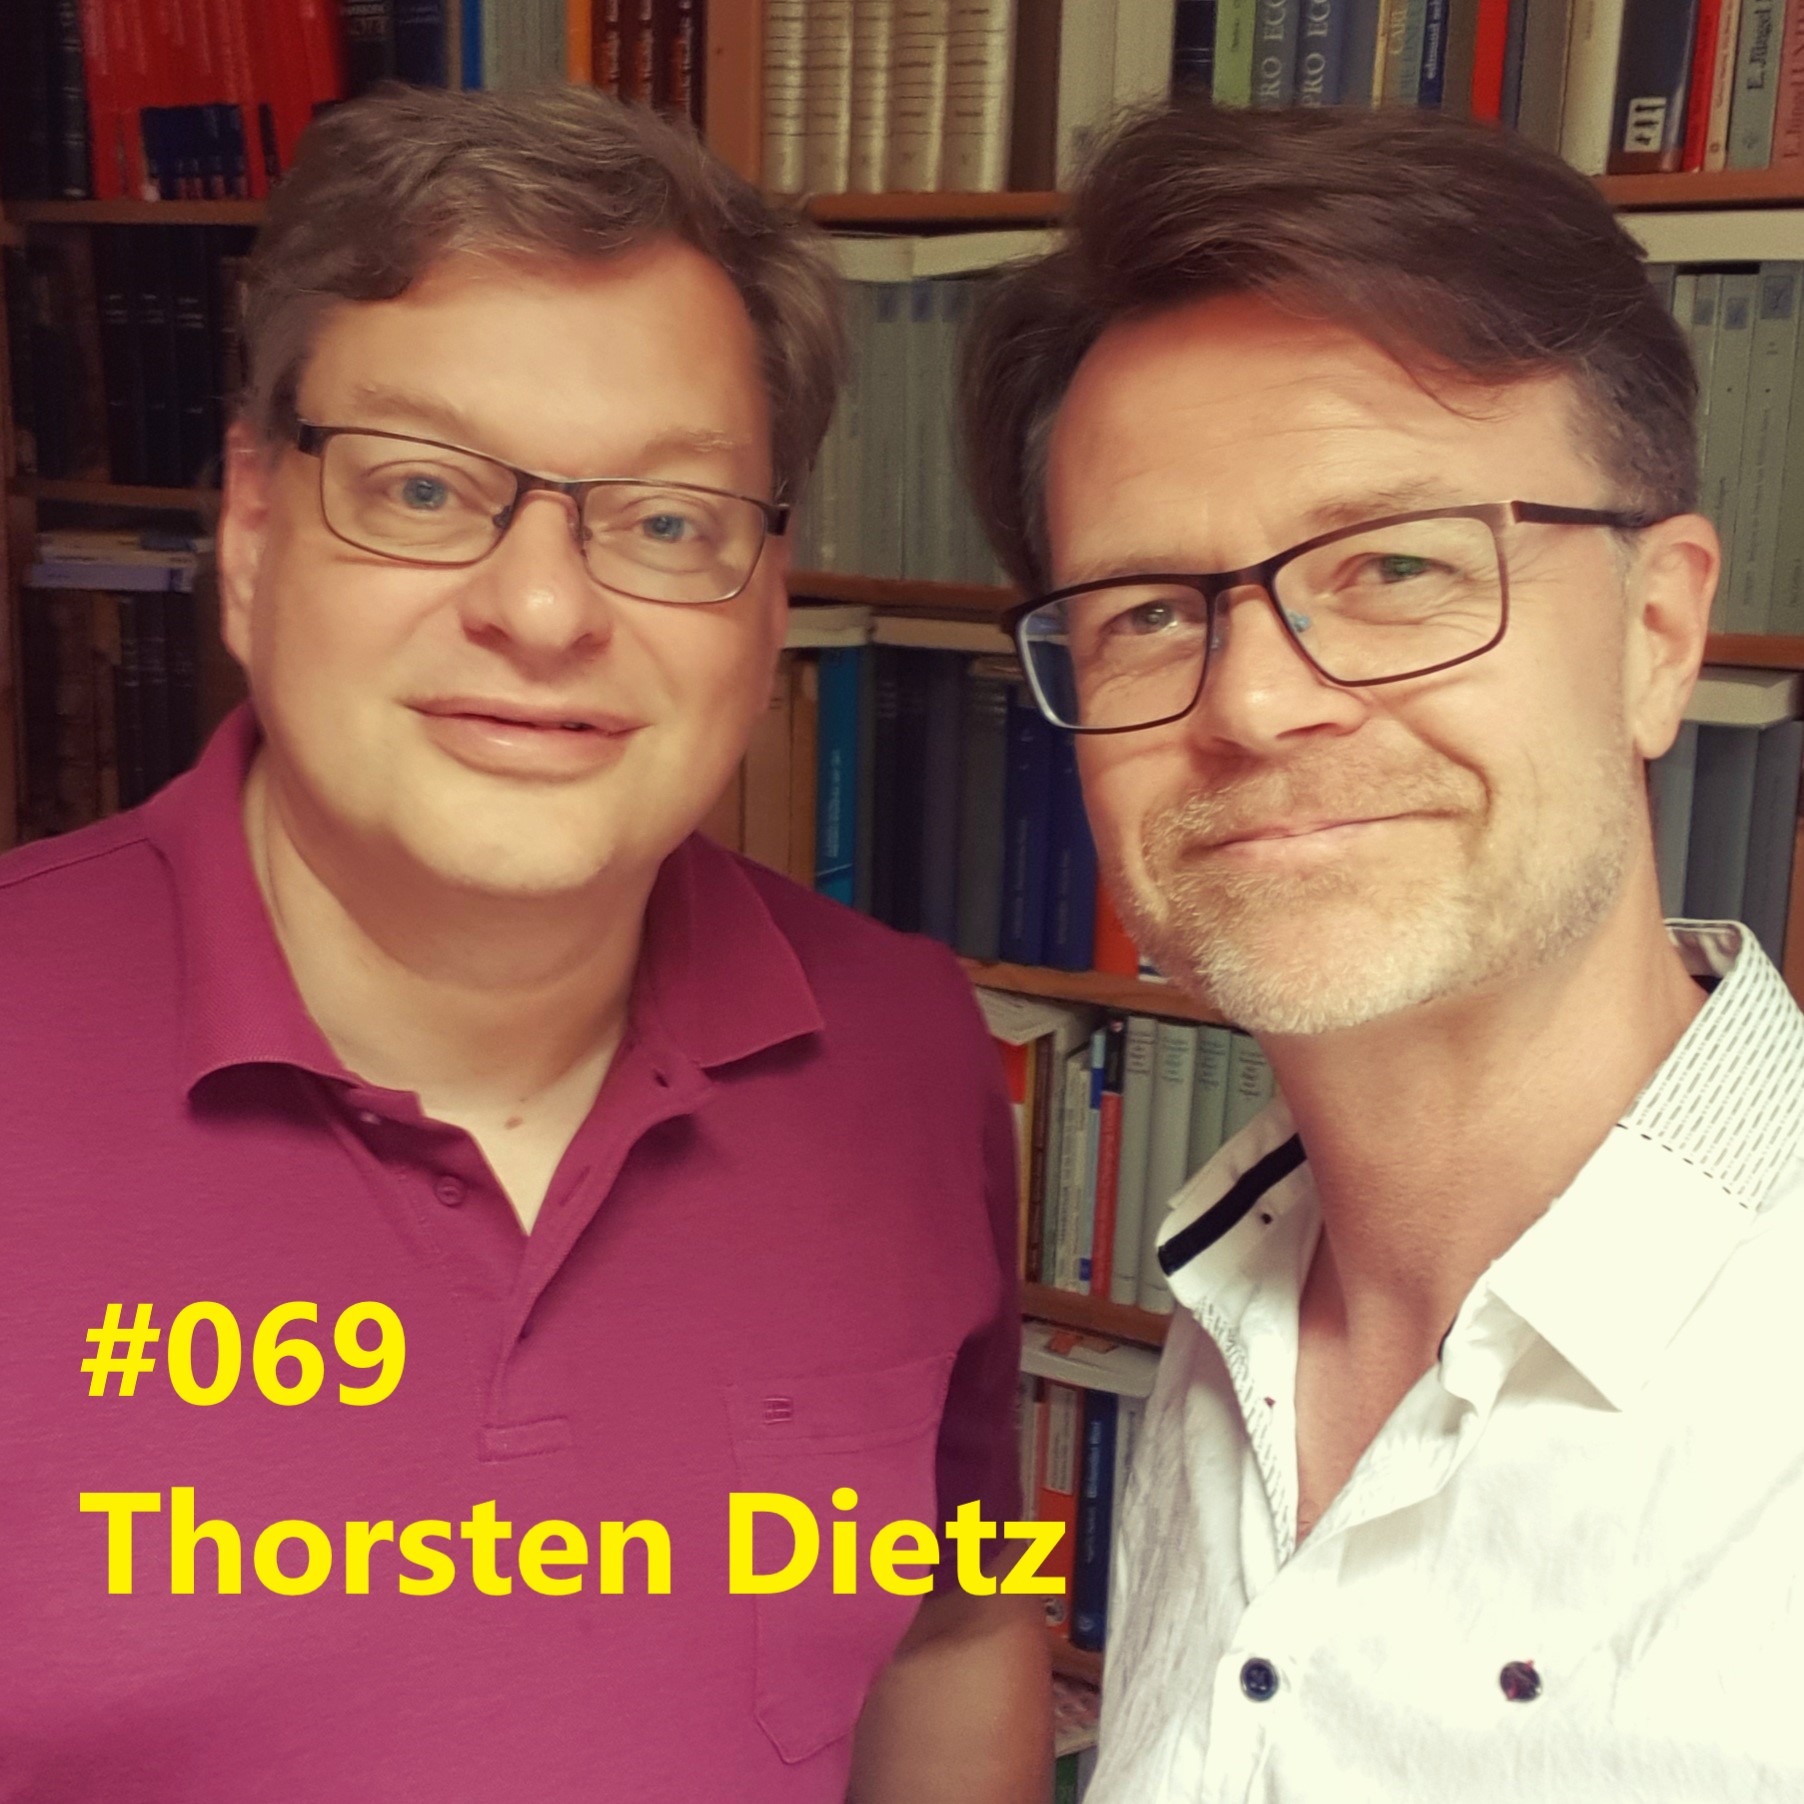 Thorsten Dietz